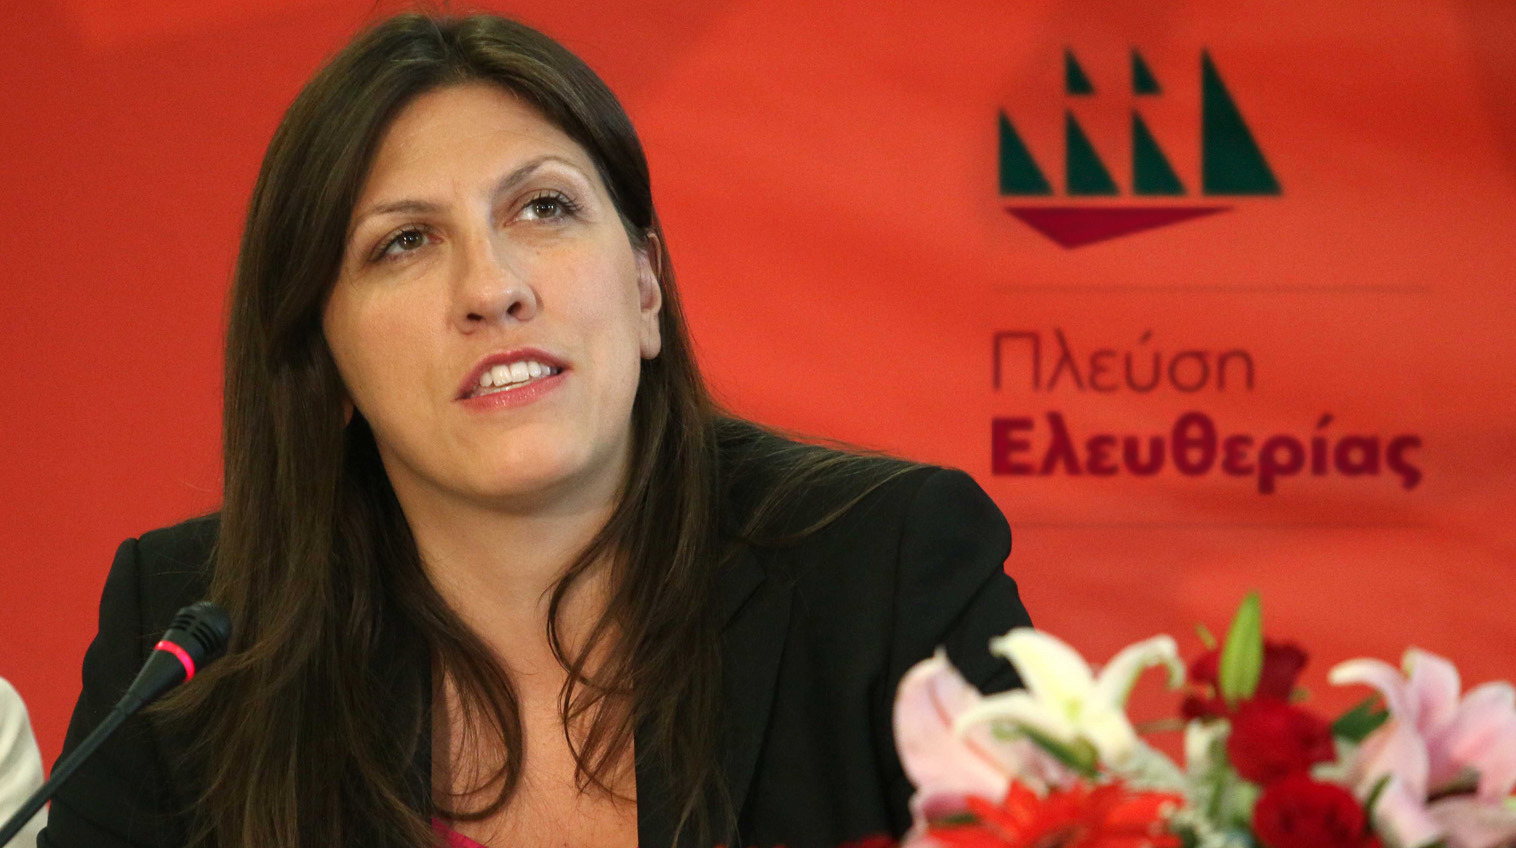 Τι δήλωσε η Κωνσταντοπούλου για την απόφαση του Eurogroup